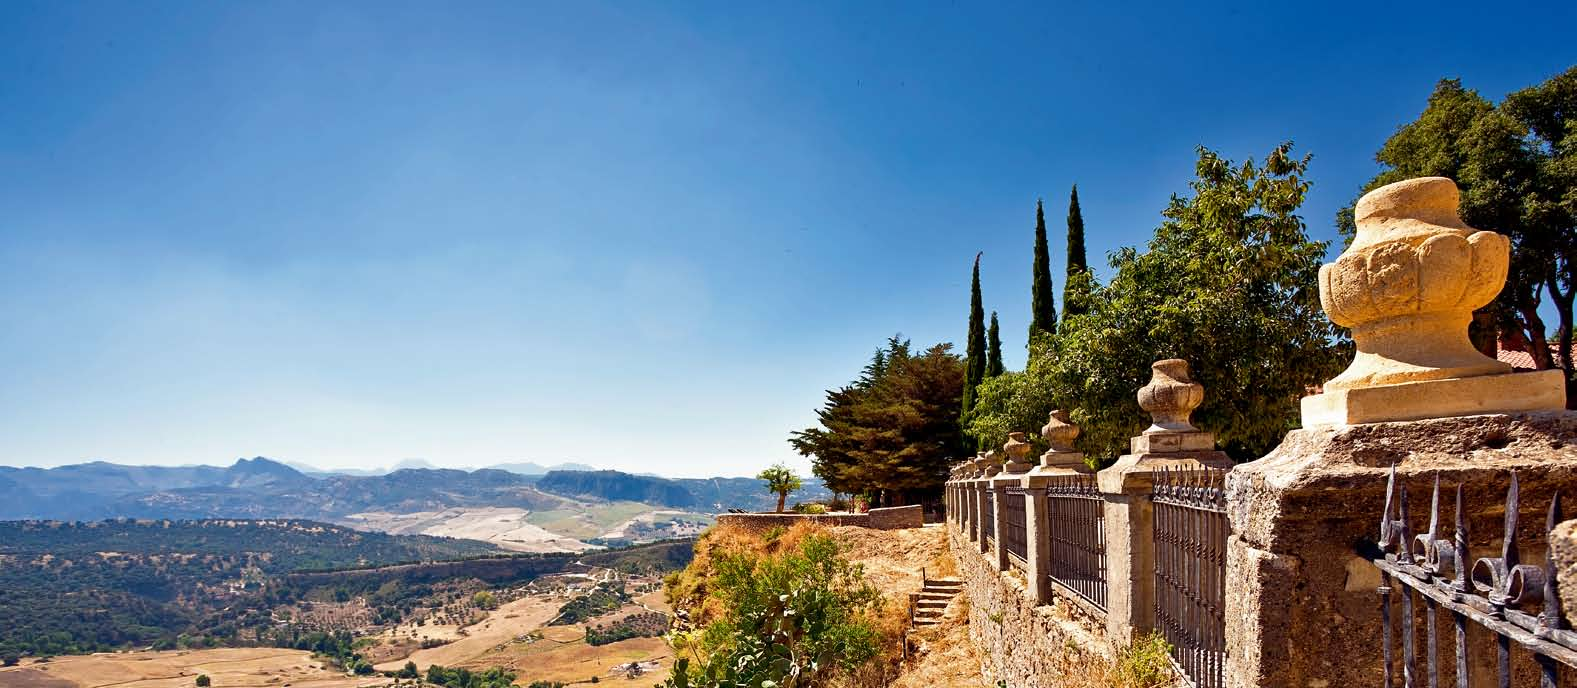 Rauhe Schönheit Ronda-Tal bei Málaga: Für den Schriftsteller Stendhal gehört Andalusien zu den schönsten Landschaften, die sich die Sinneslust zur Bleibe wünschen kann.